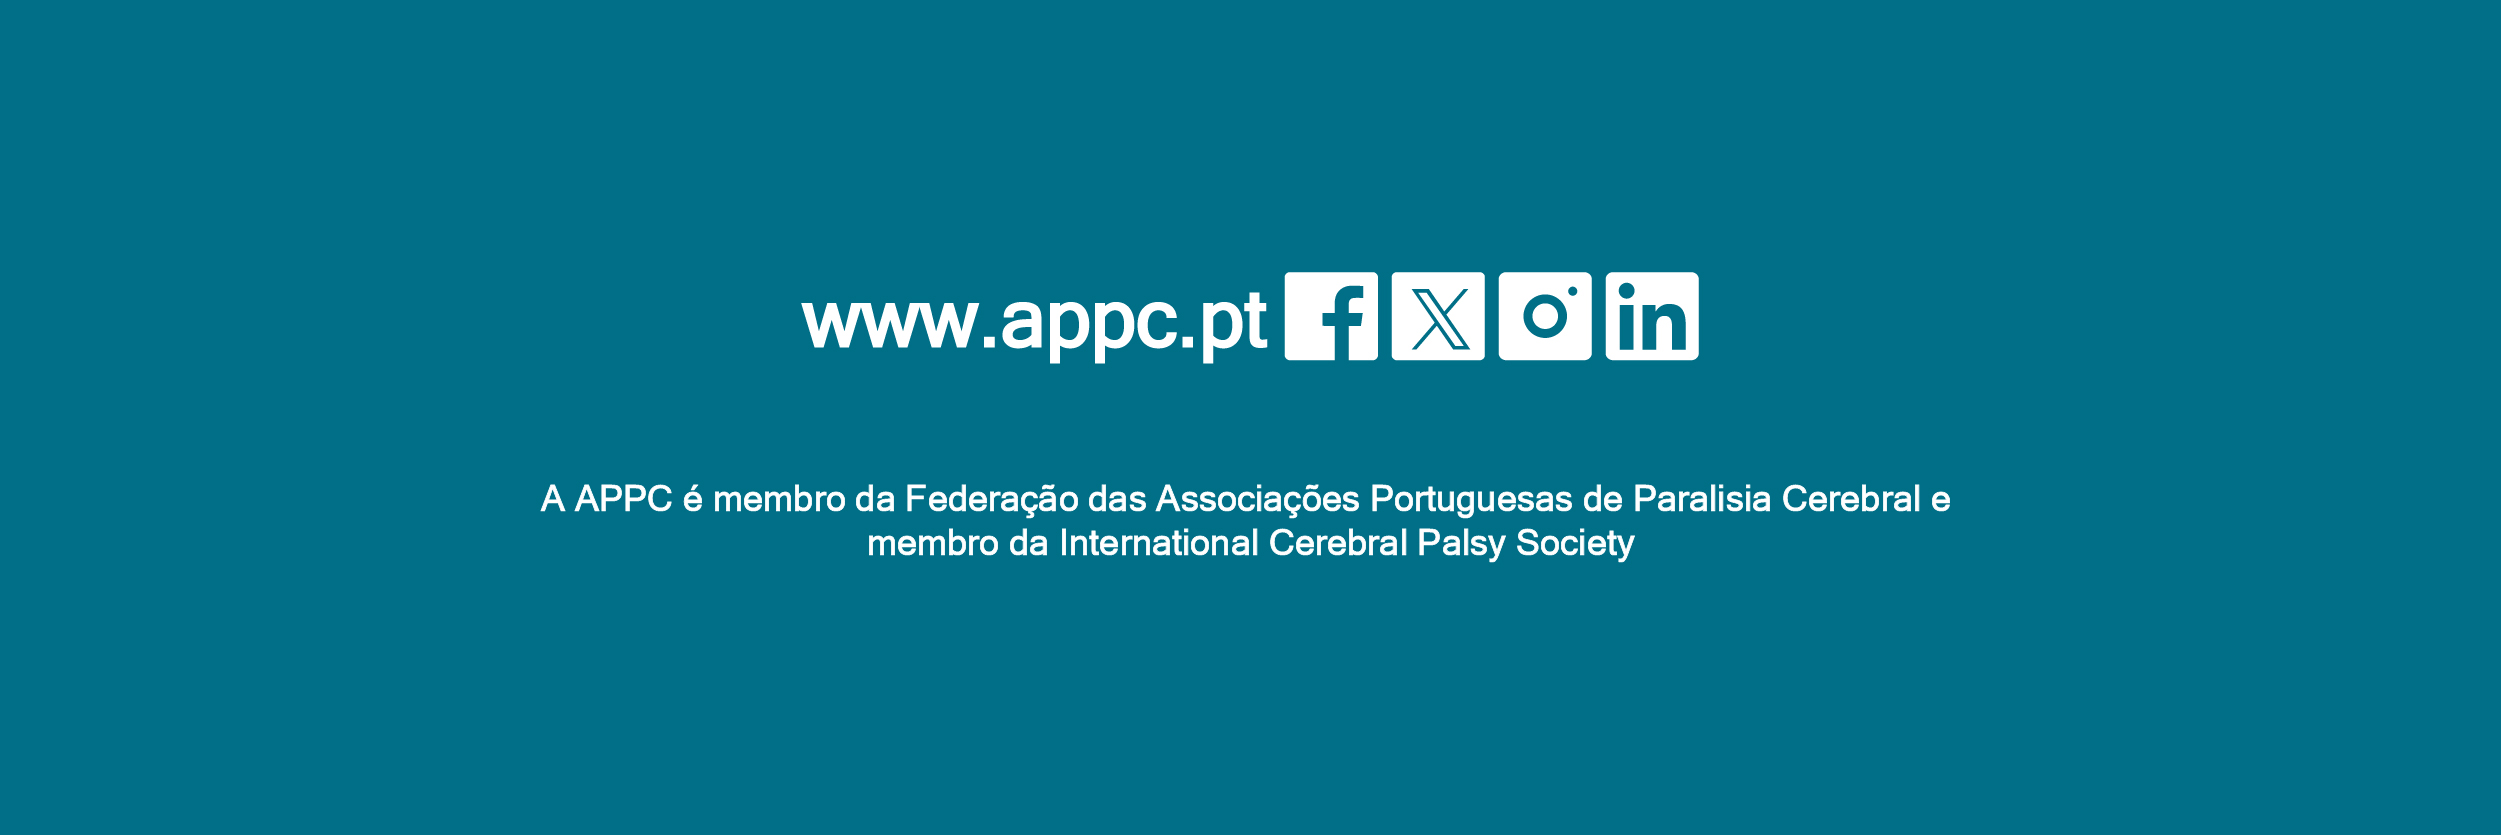 Ícones  brancos sob fundo azul com sítio  institucional e redes sociais da APPC